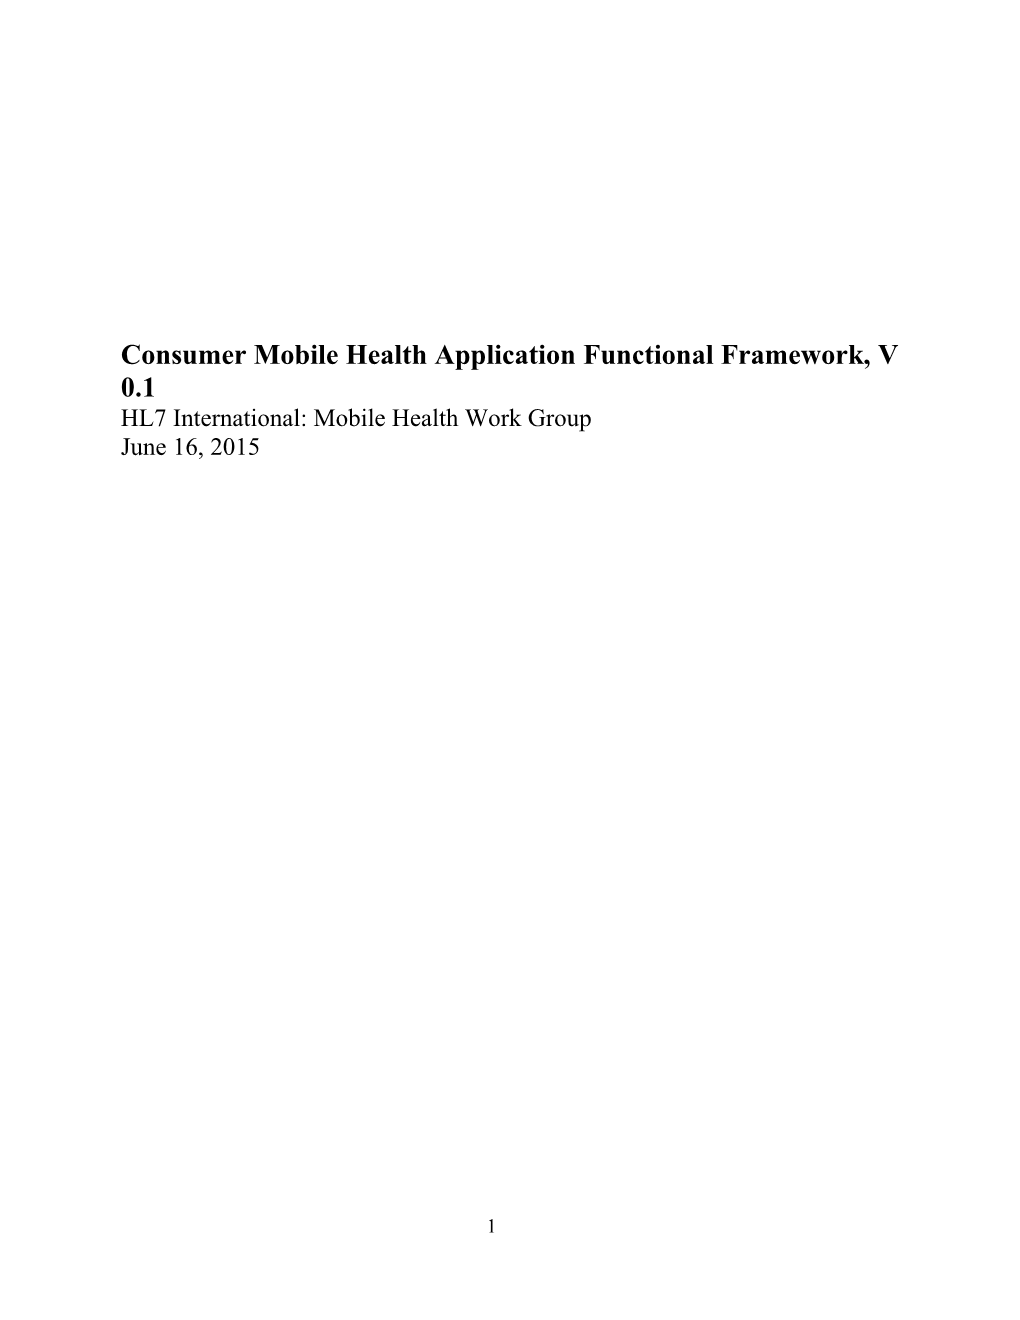 Consumer Mobile Health Application Functional Framework, V 0.1